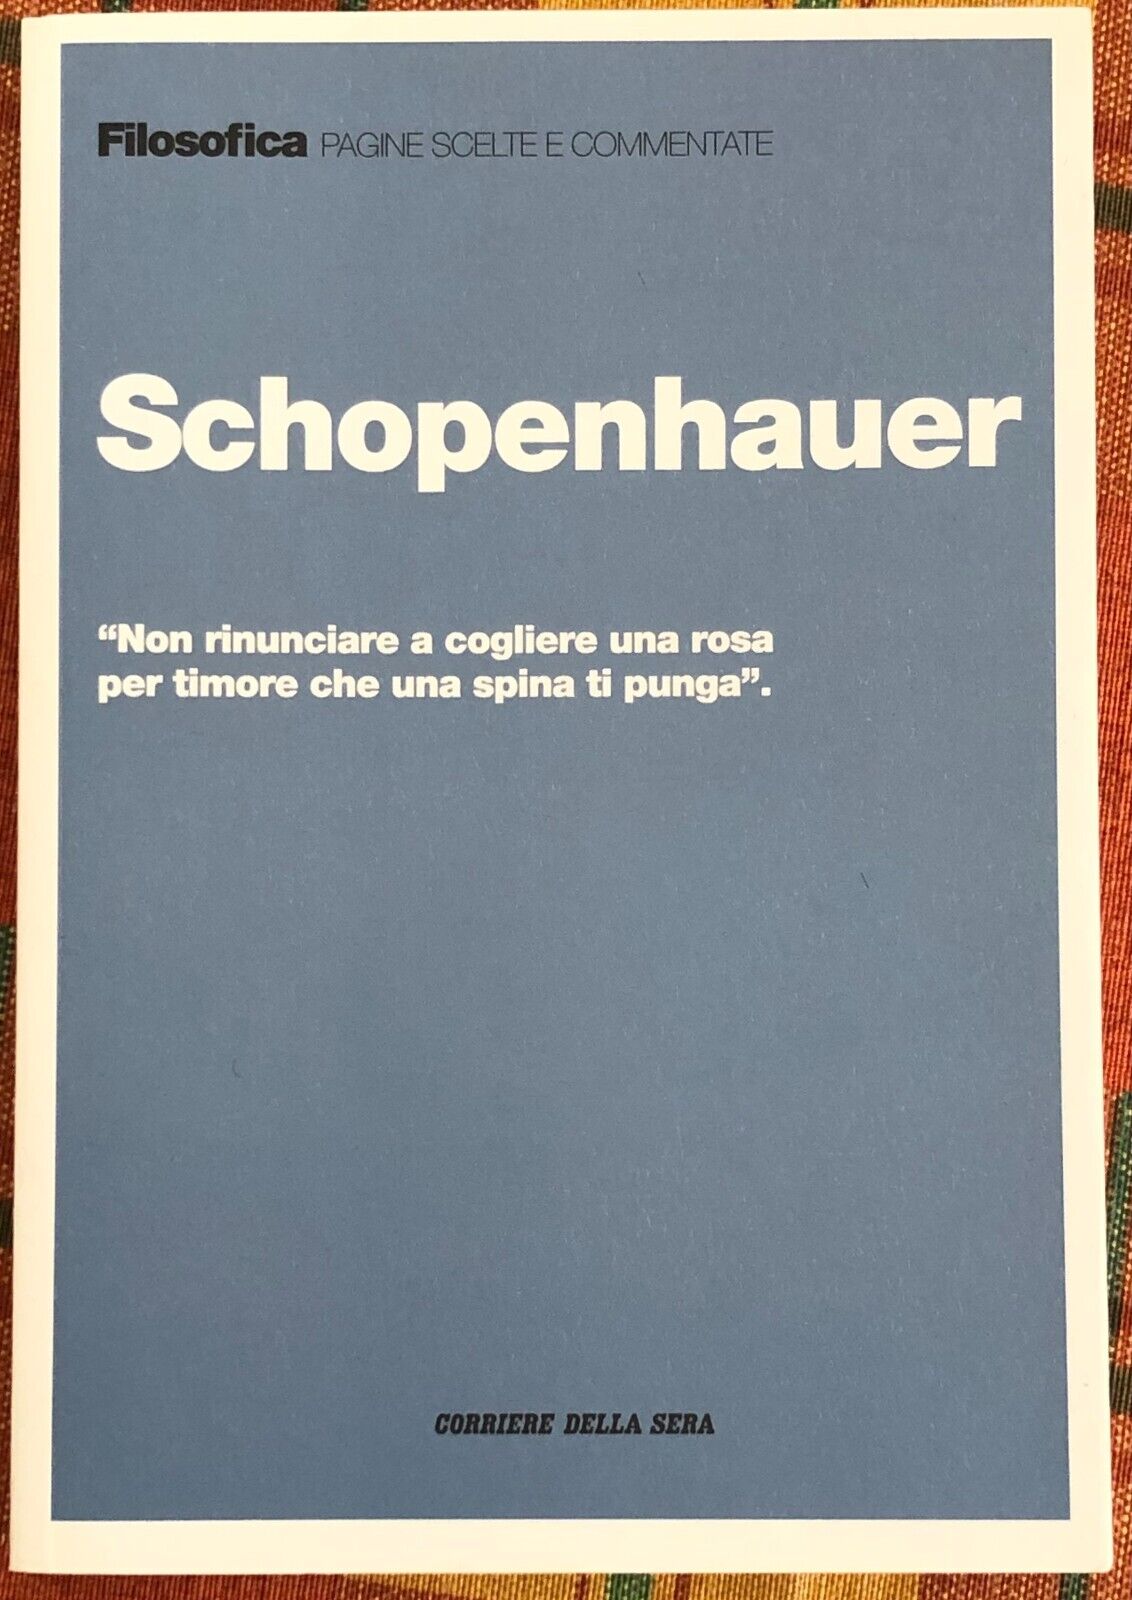 Filosofica. Pagine scelte e commentate n. 22 - Schopenhauer di Aa.vv., 2021, 